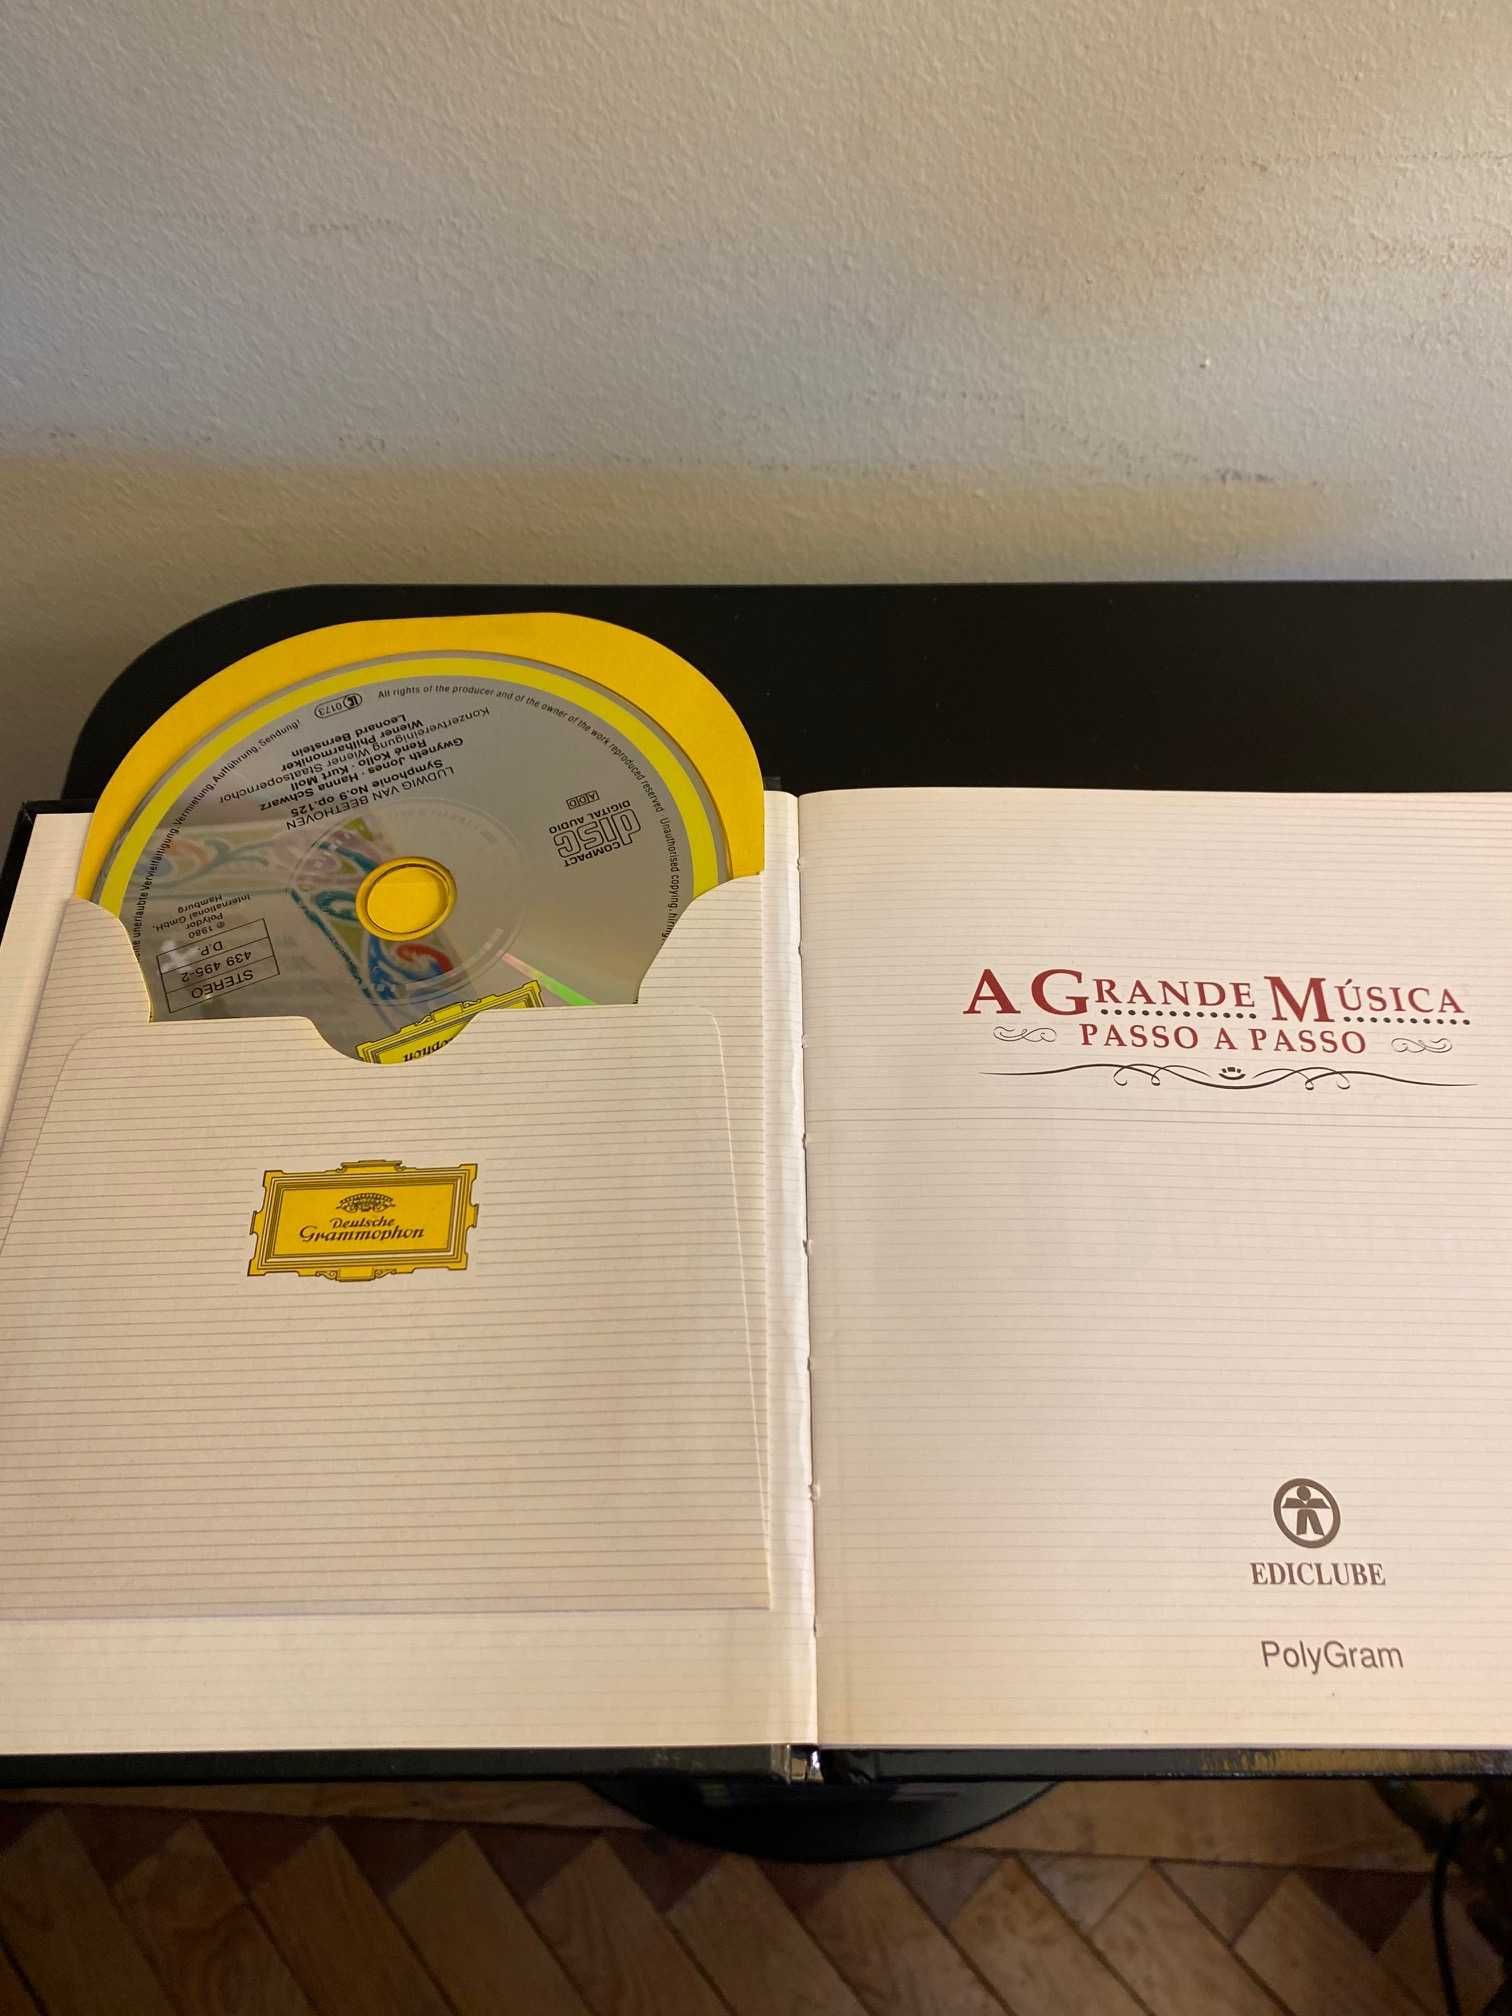 Coleção 50 CDs de música clássica "A Grande Música" da Ediclube